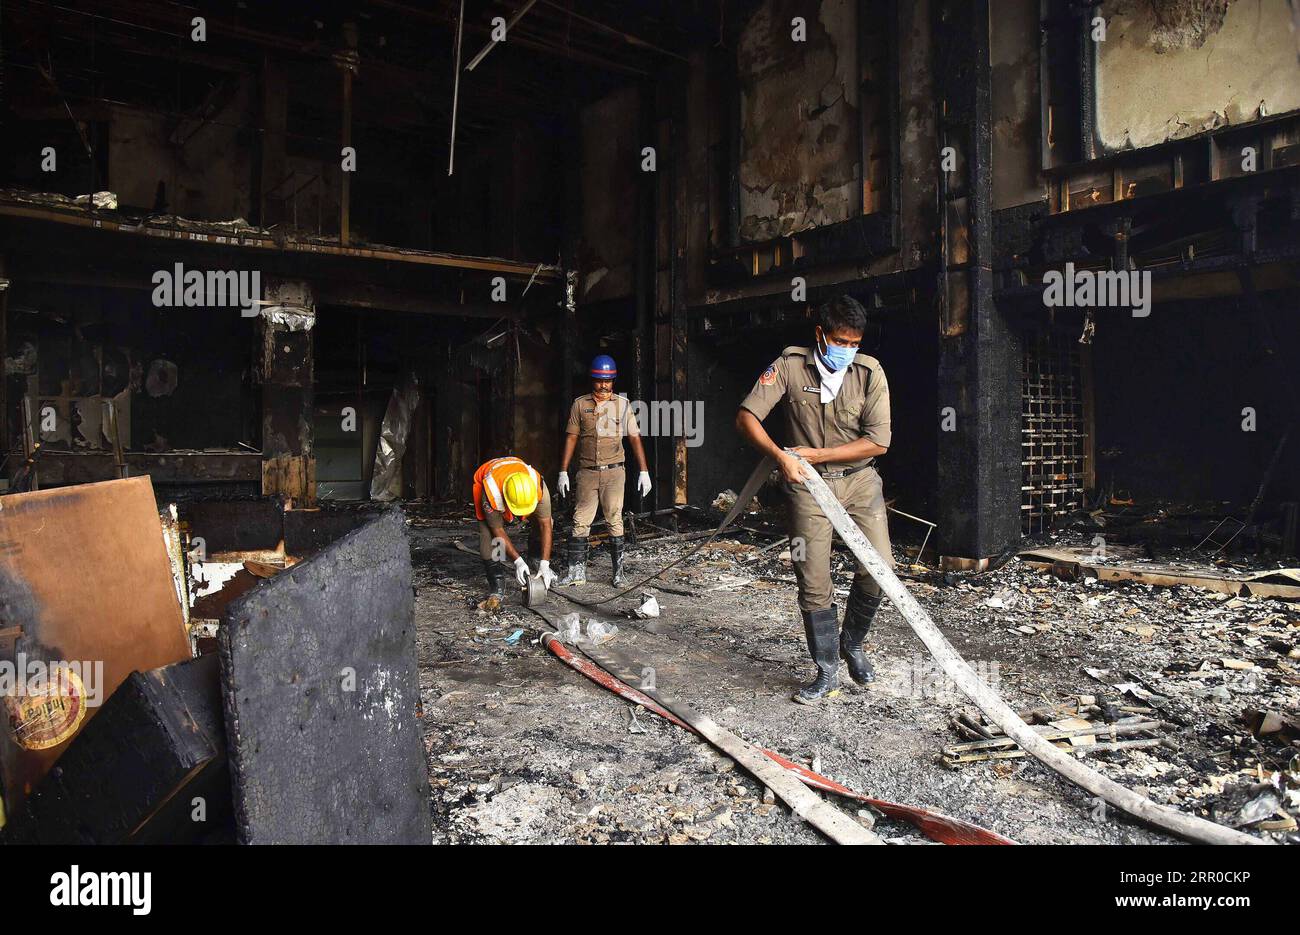 200809 -- ANDHRA PRADESH, 9 agosto 2020 -- i vigili del fuoco avvolgono i tubi dell'acqua dopo aver gettato un incendio in una struttura COVID-19 convertita da un hotel nel distretto di Vijayawada, nello stato meridionale dell'Andhra Pradesh, 9 agosto 2020. Almeno sette persone sono morte nello stato meridionale dell'India, Andhra Pradesh, quando un incendio ha inghiottito una struttura COVID-19 domenica mattina, ha detto un funzionario dell'amministrazione locale. Str/Xinhua INDIA-ANDHRA PRADESH-COVID-19-FACILITY-FIRE Stringer PUBLICATIONxNOTxINxCHN Foto Stock